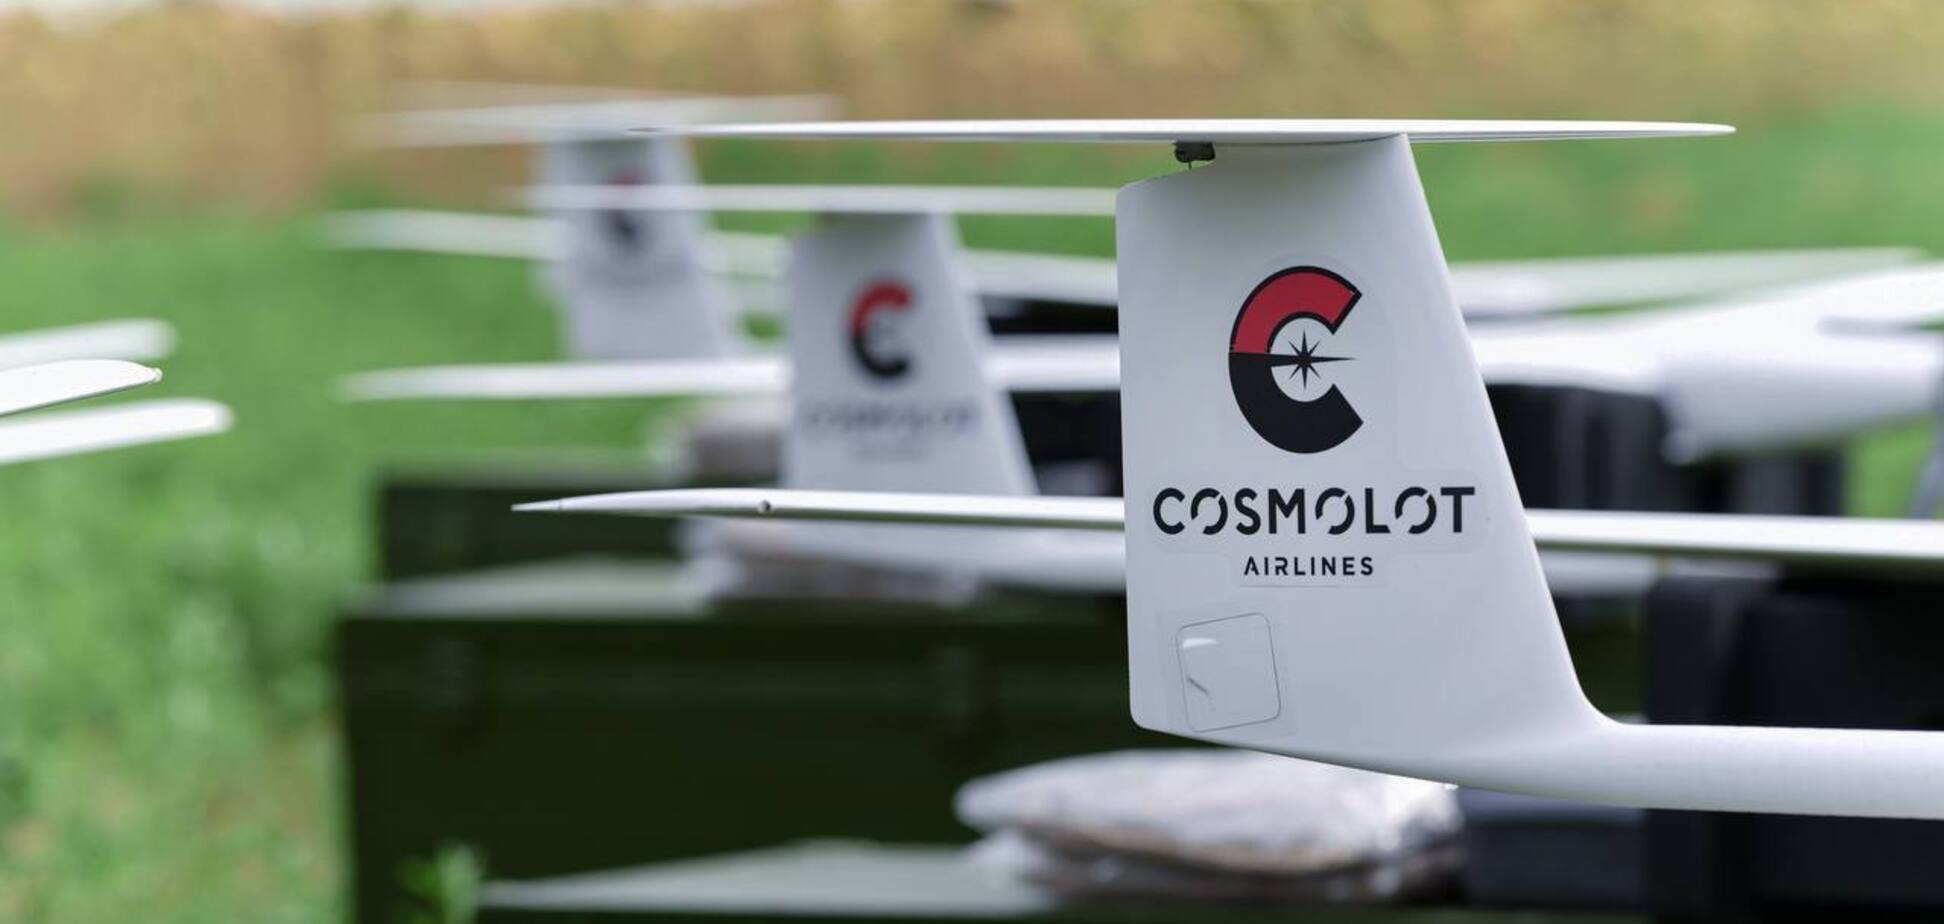 Cosmolot: тиск на бізнес посилюється. Правоохоронці штучно блокують можливість сплачувати податки